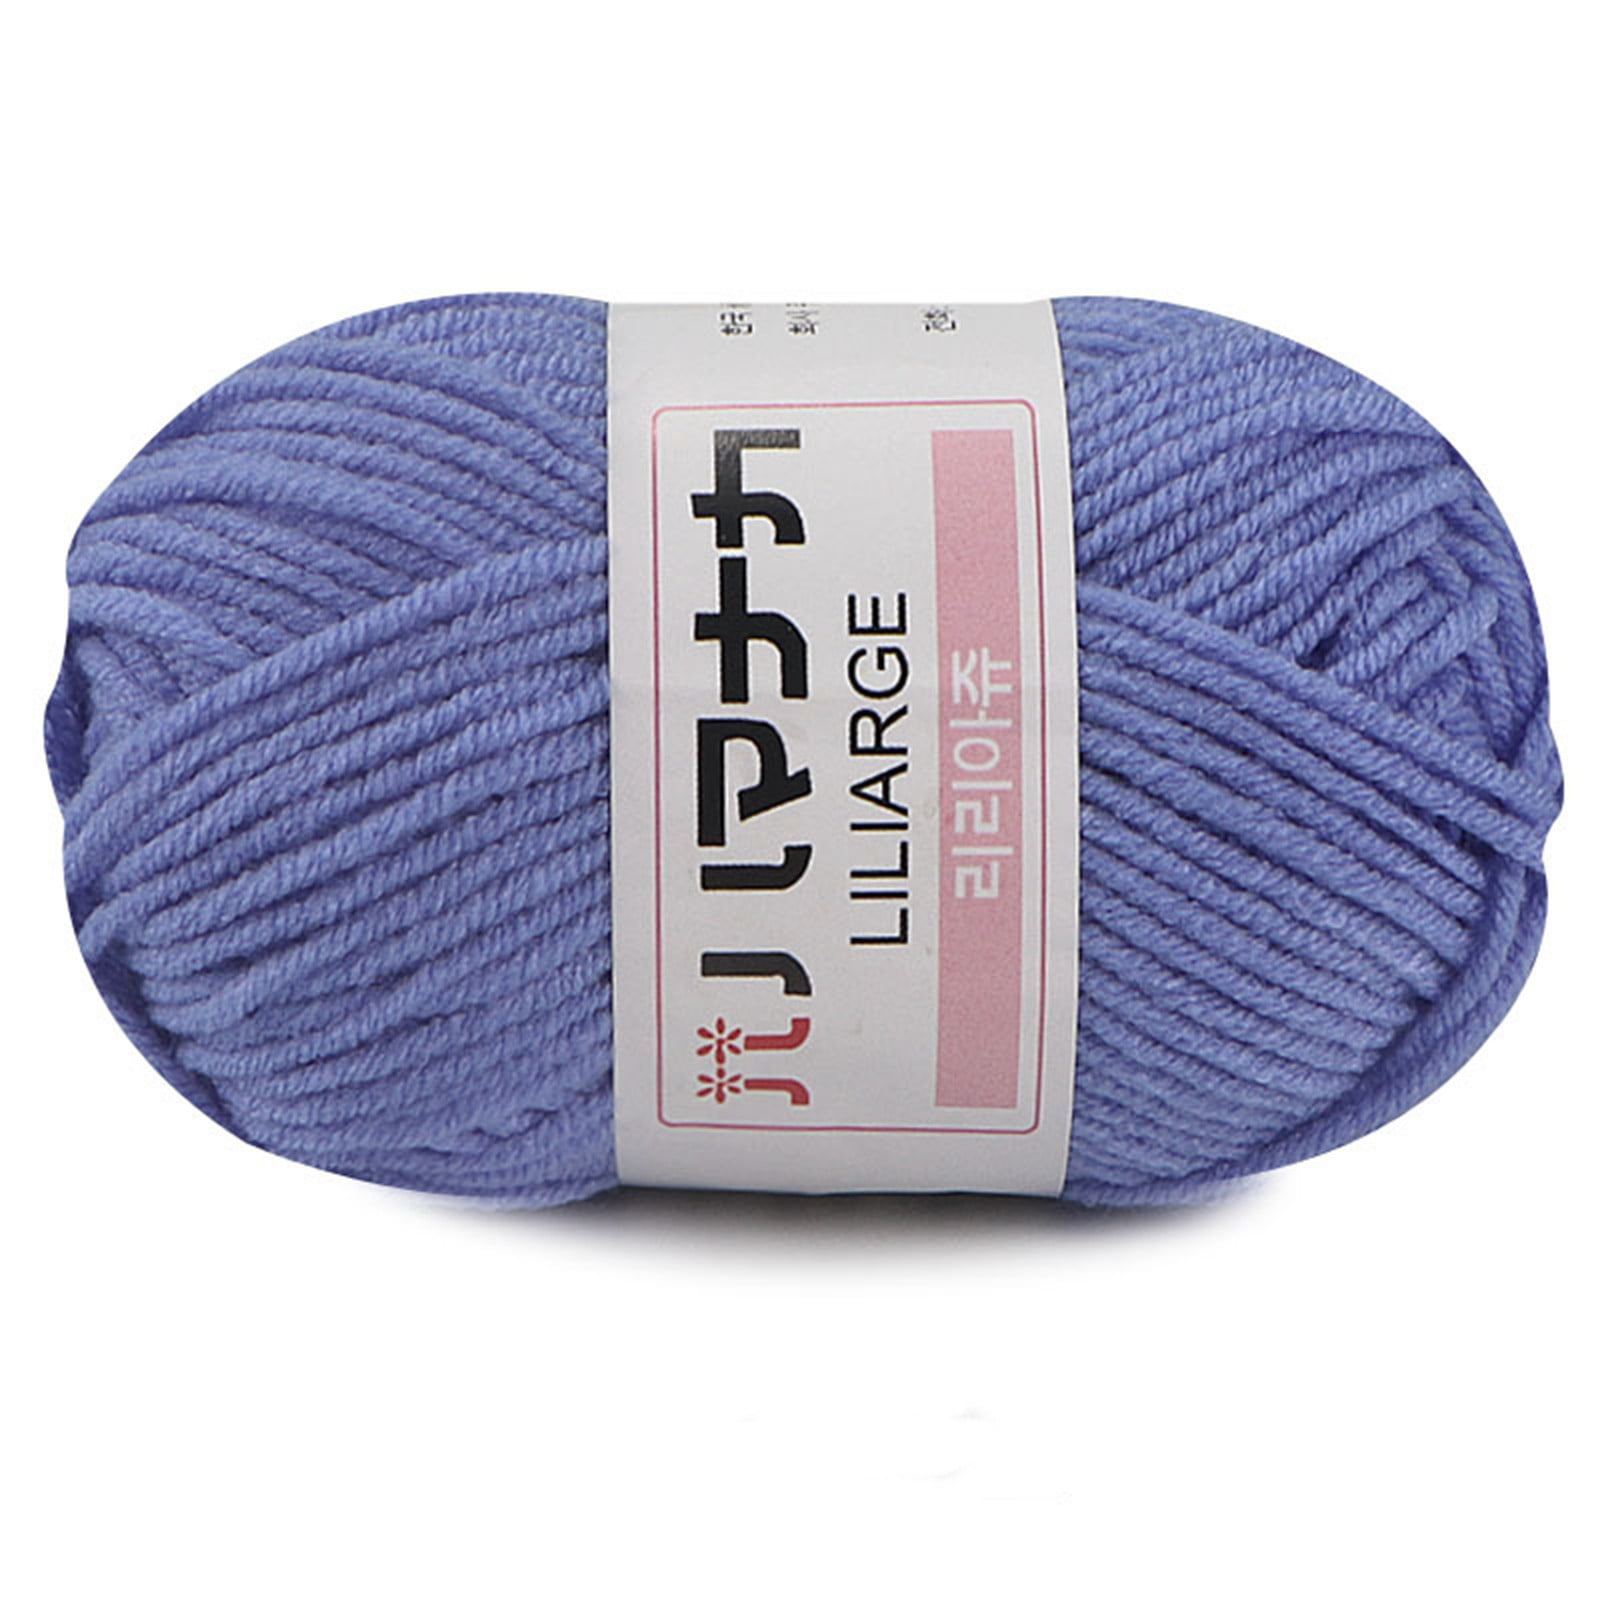 Cotton Yarn For Knitting, Crochet & Weaving - 100%, blend & more